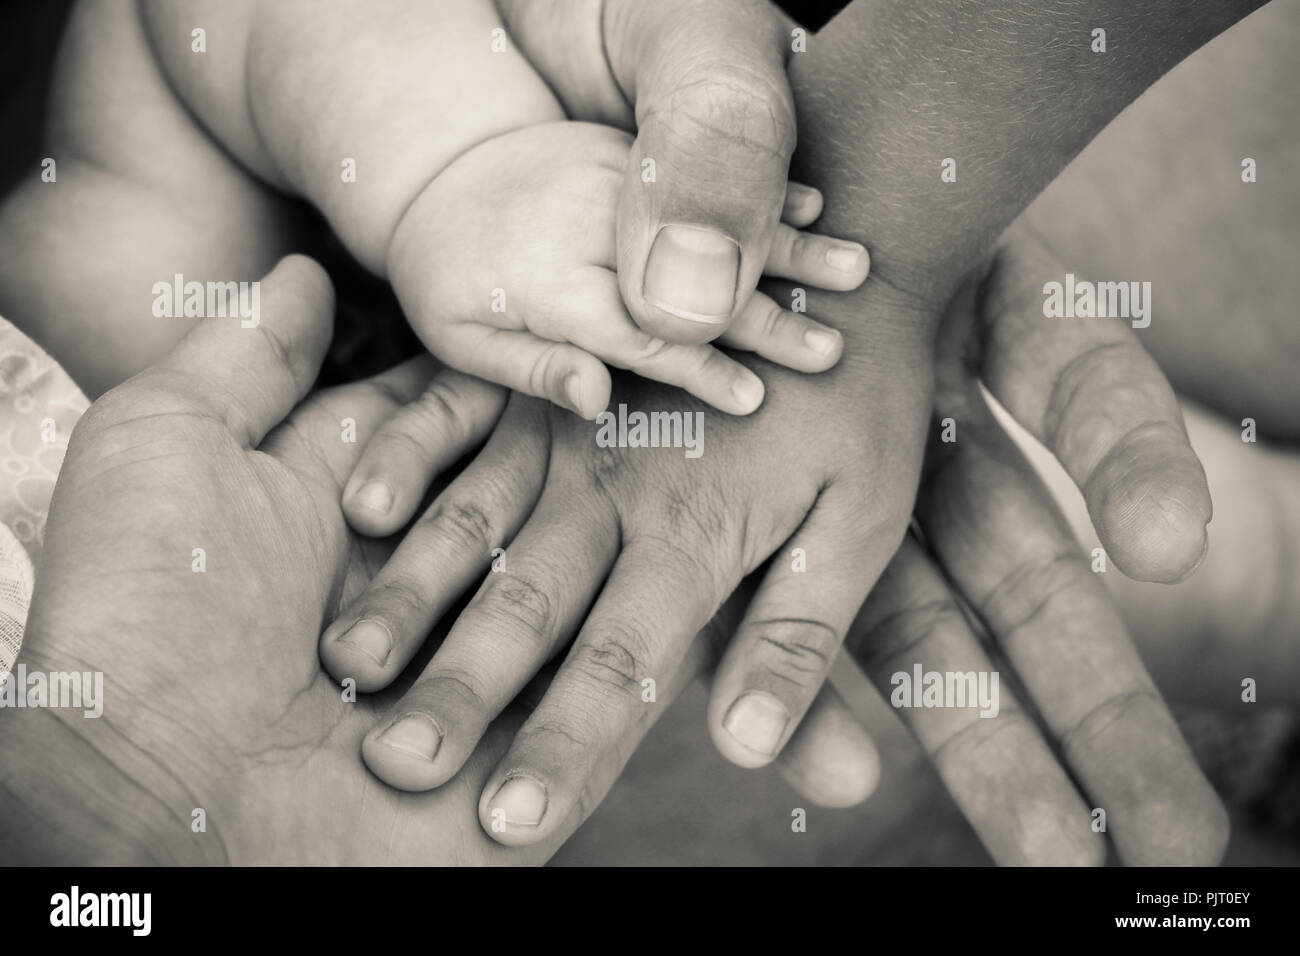 Quatre mains de la famille. Concept d'amour, d'amitié, de bonheur en famille. Tourné en noir et blanc. Banque D'Images